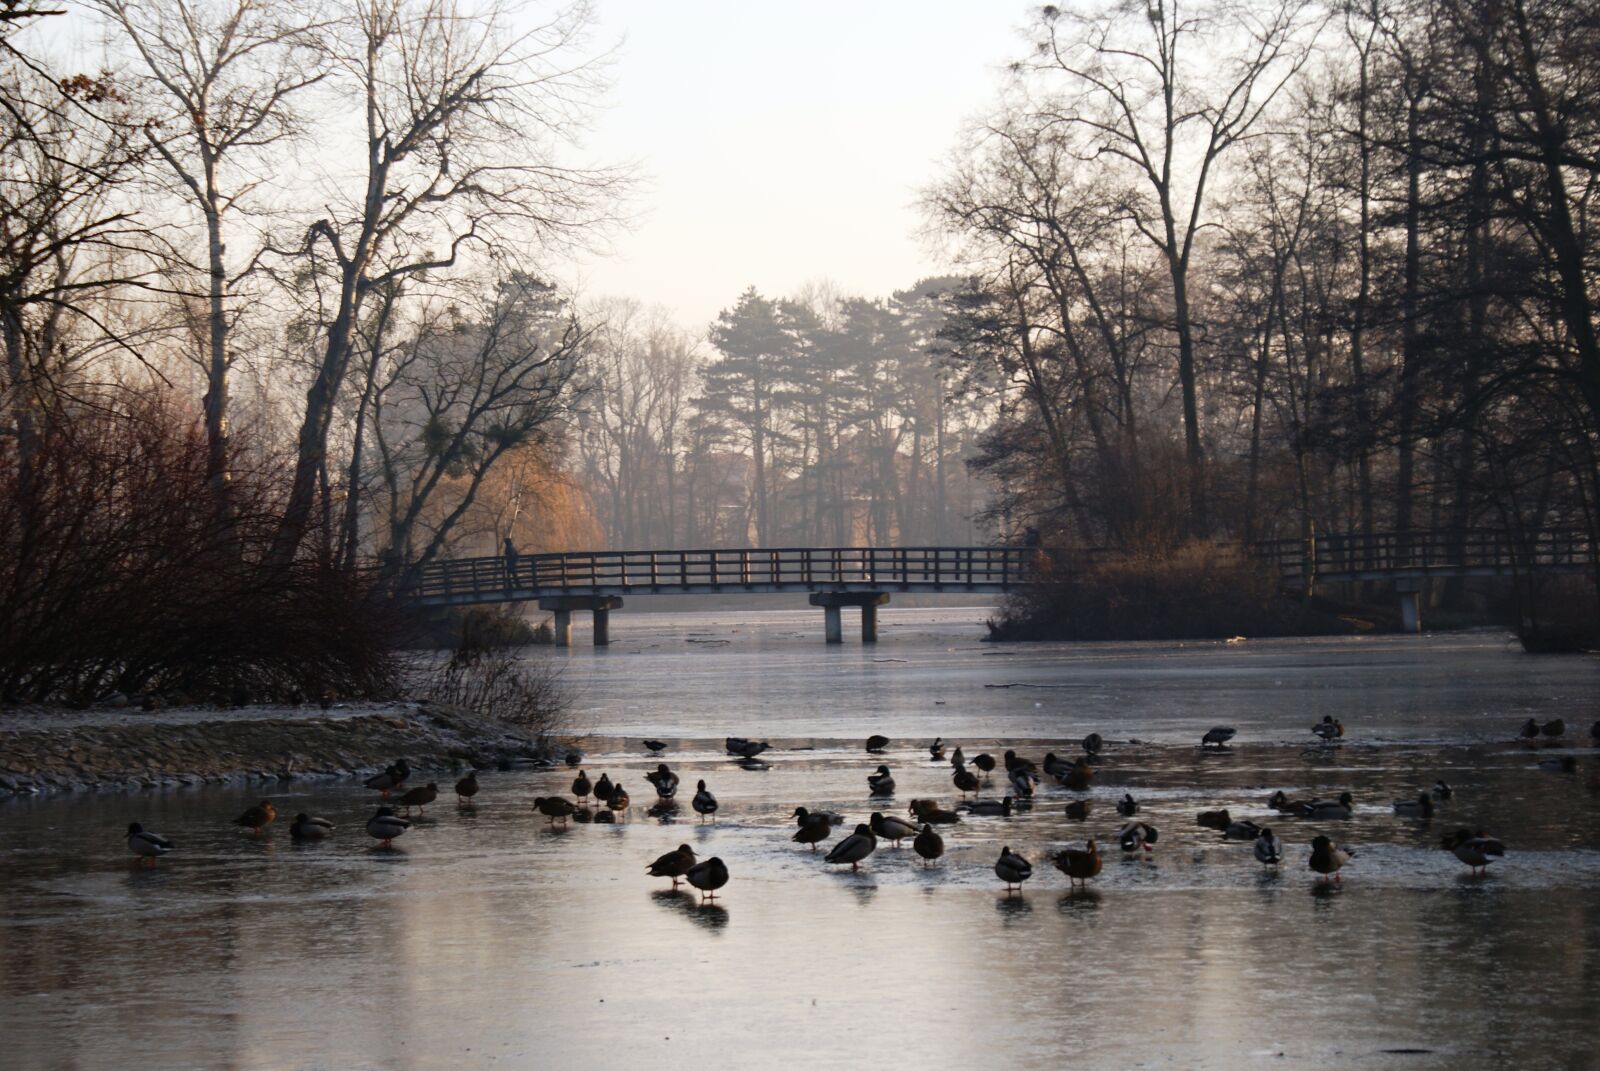 Sony Alpha DSLR-A200 sample photo. Park, ducks, pond photography